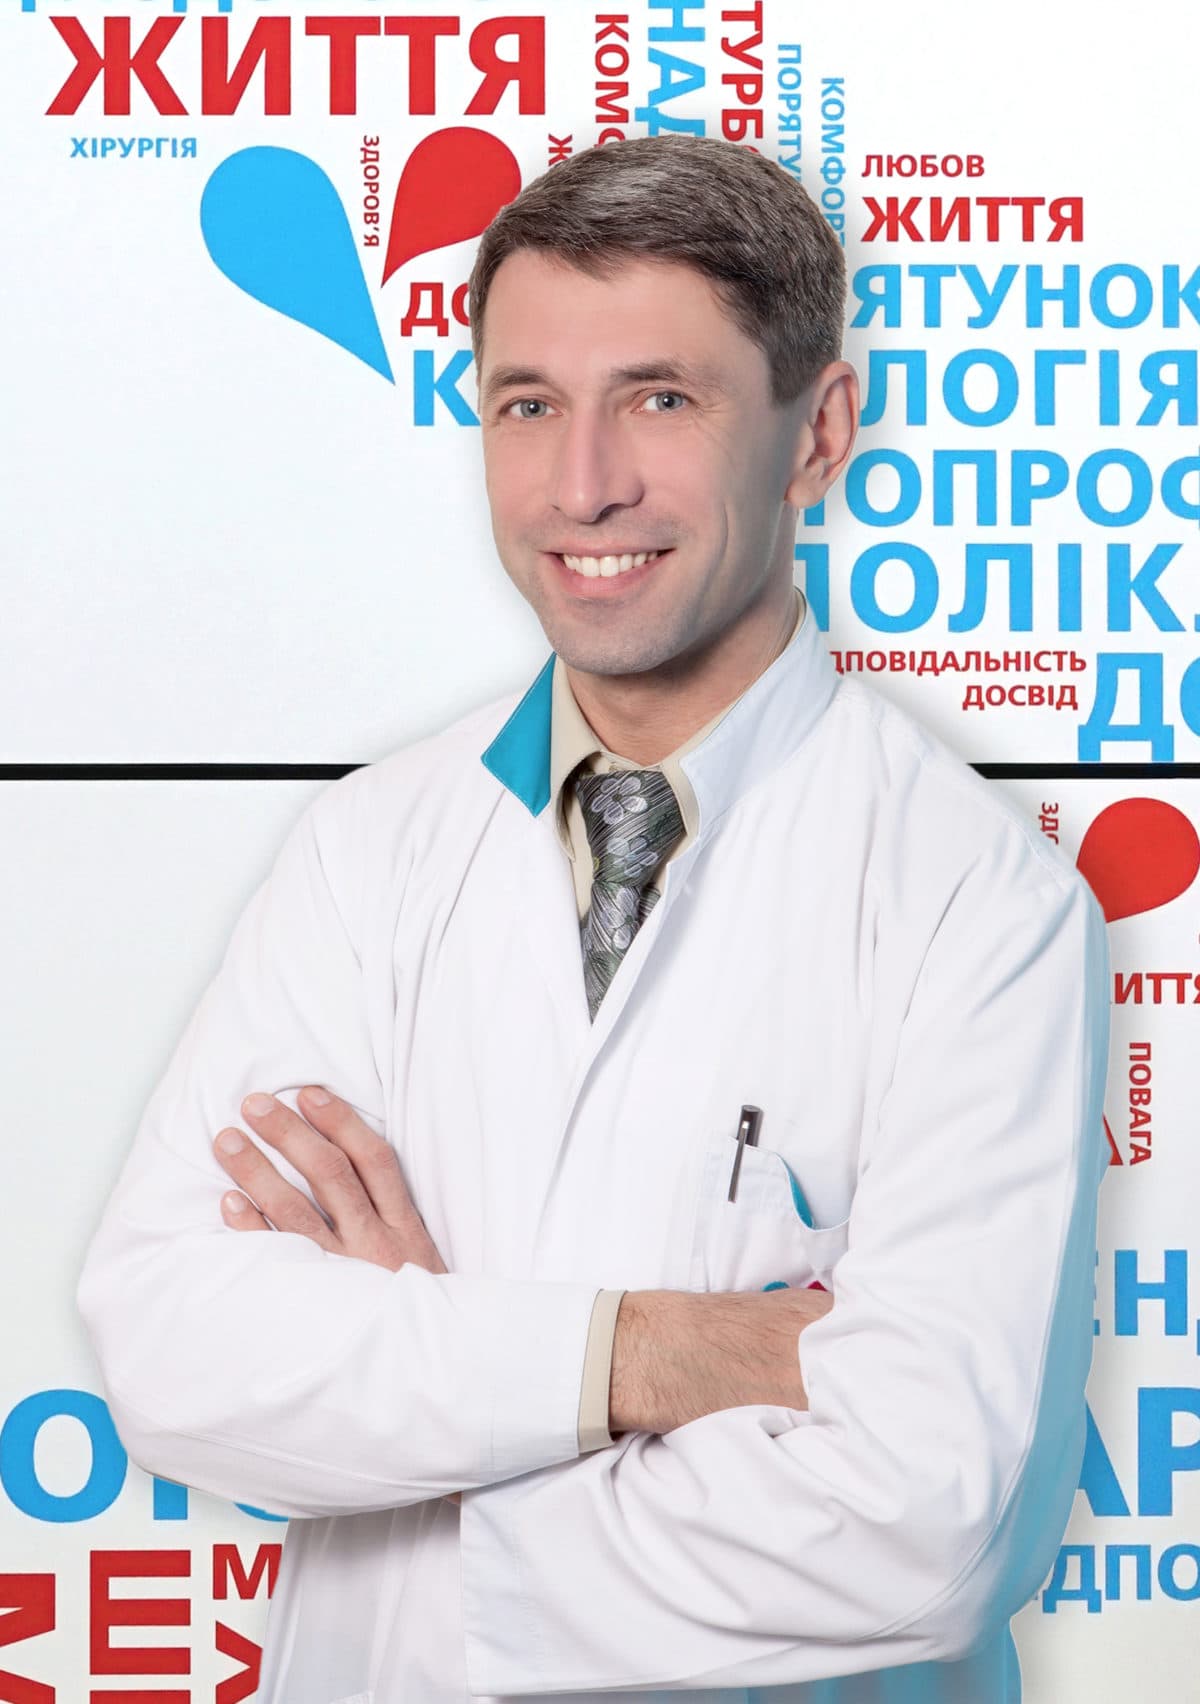 Ургентна допомога при інфаркті 24/7 - 5 - svekaterina.ua